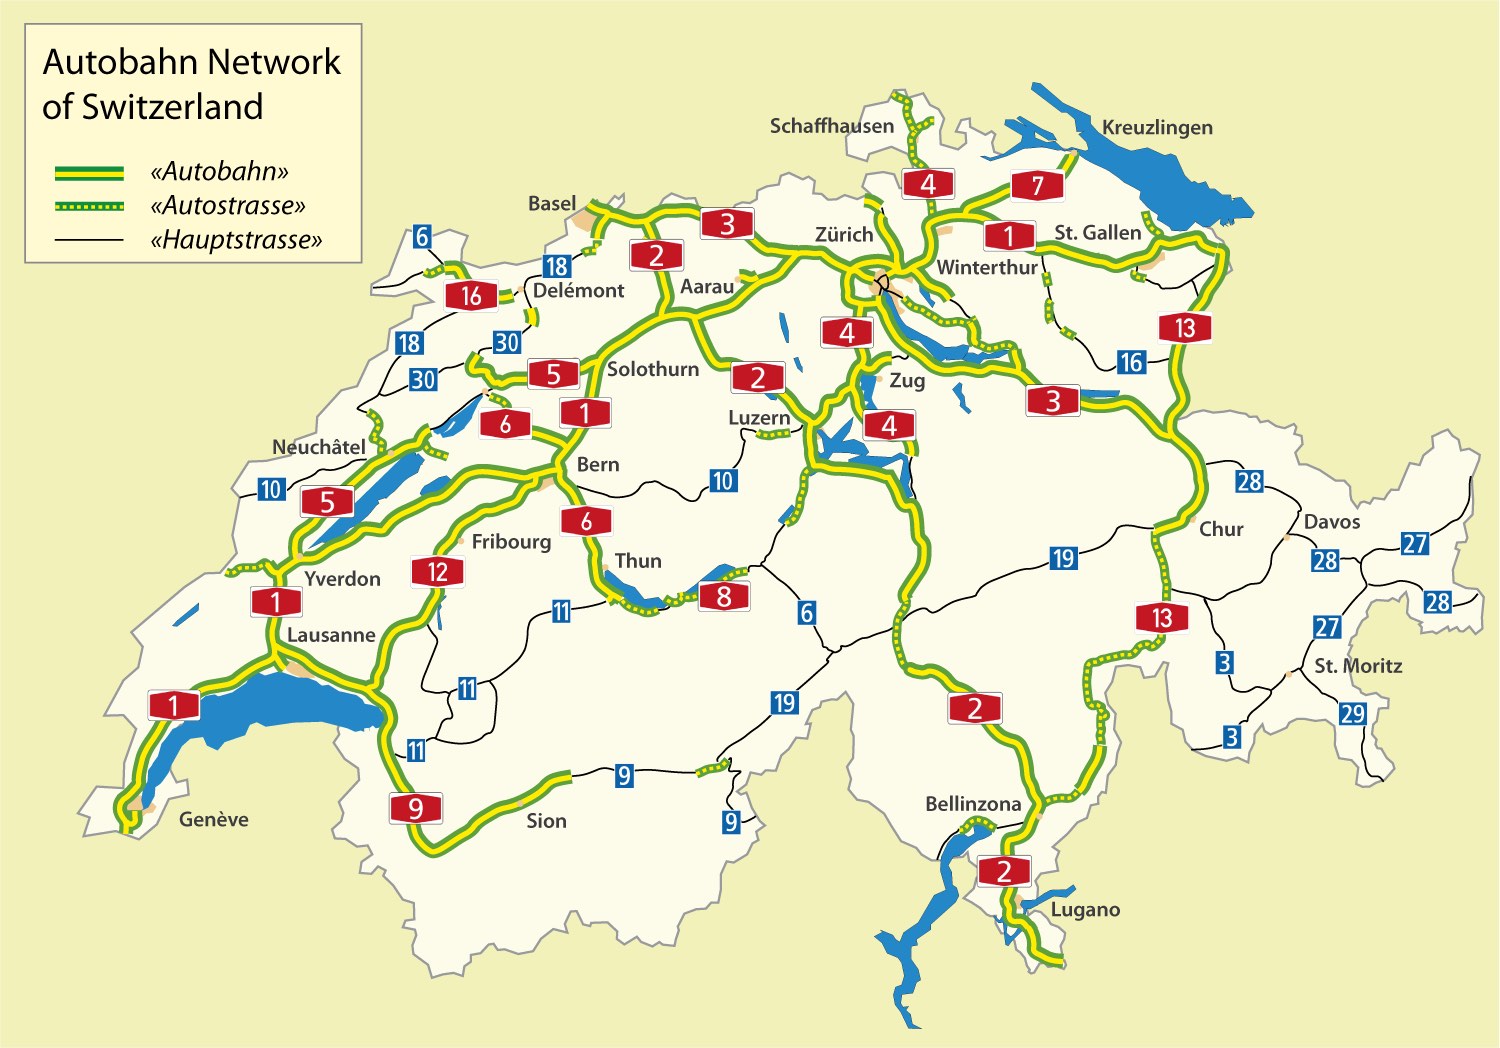 Péage et routes sous réserve de vignettes en Suisse
